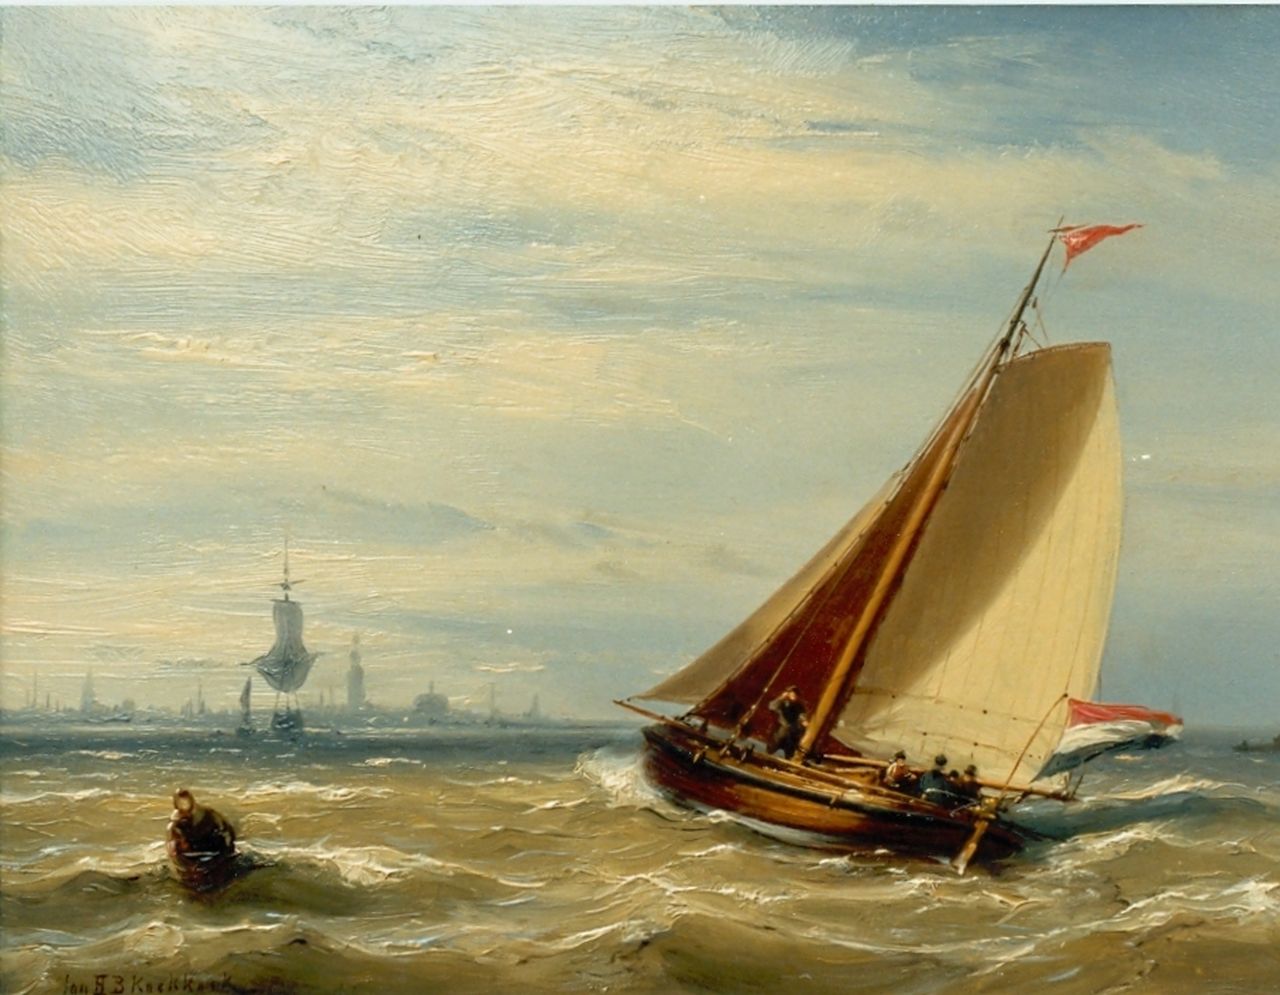 Koekkoek J.H.B.  | Johannes Hermanus Barend 'Jan H.B.' Koekkoek, Shipping, the Zuiderzee, oil on panel 20.8 x 27.6 cm, signed l.l.